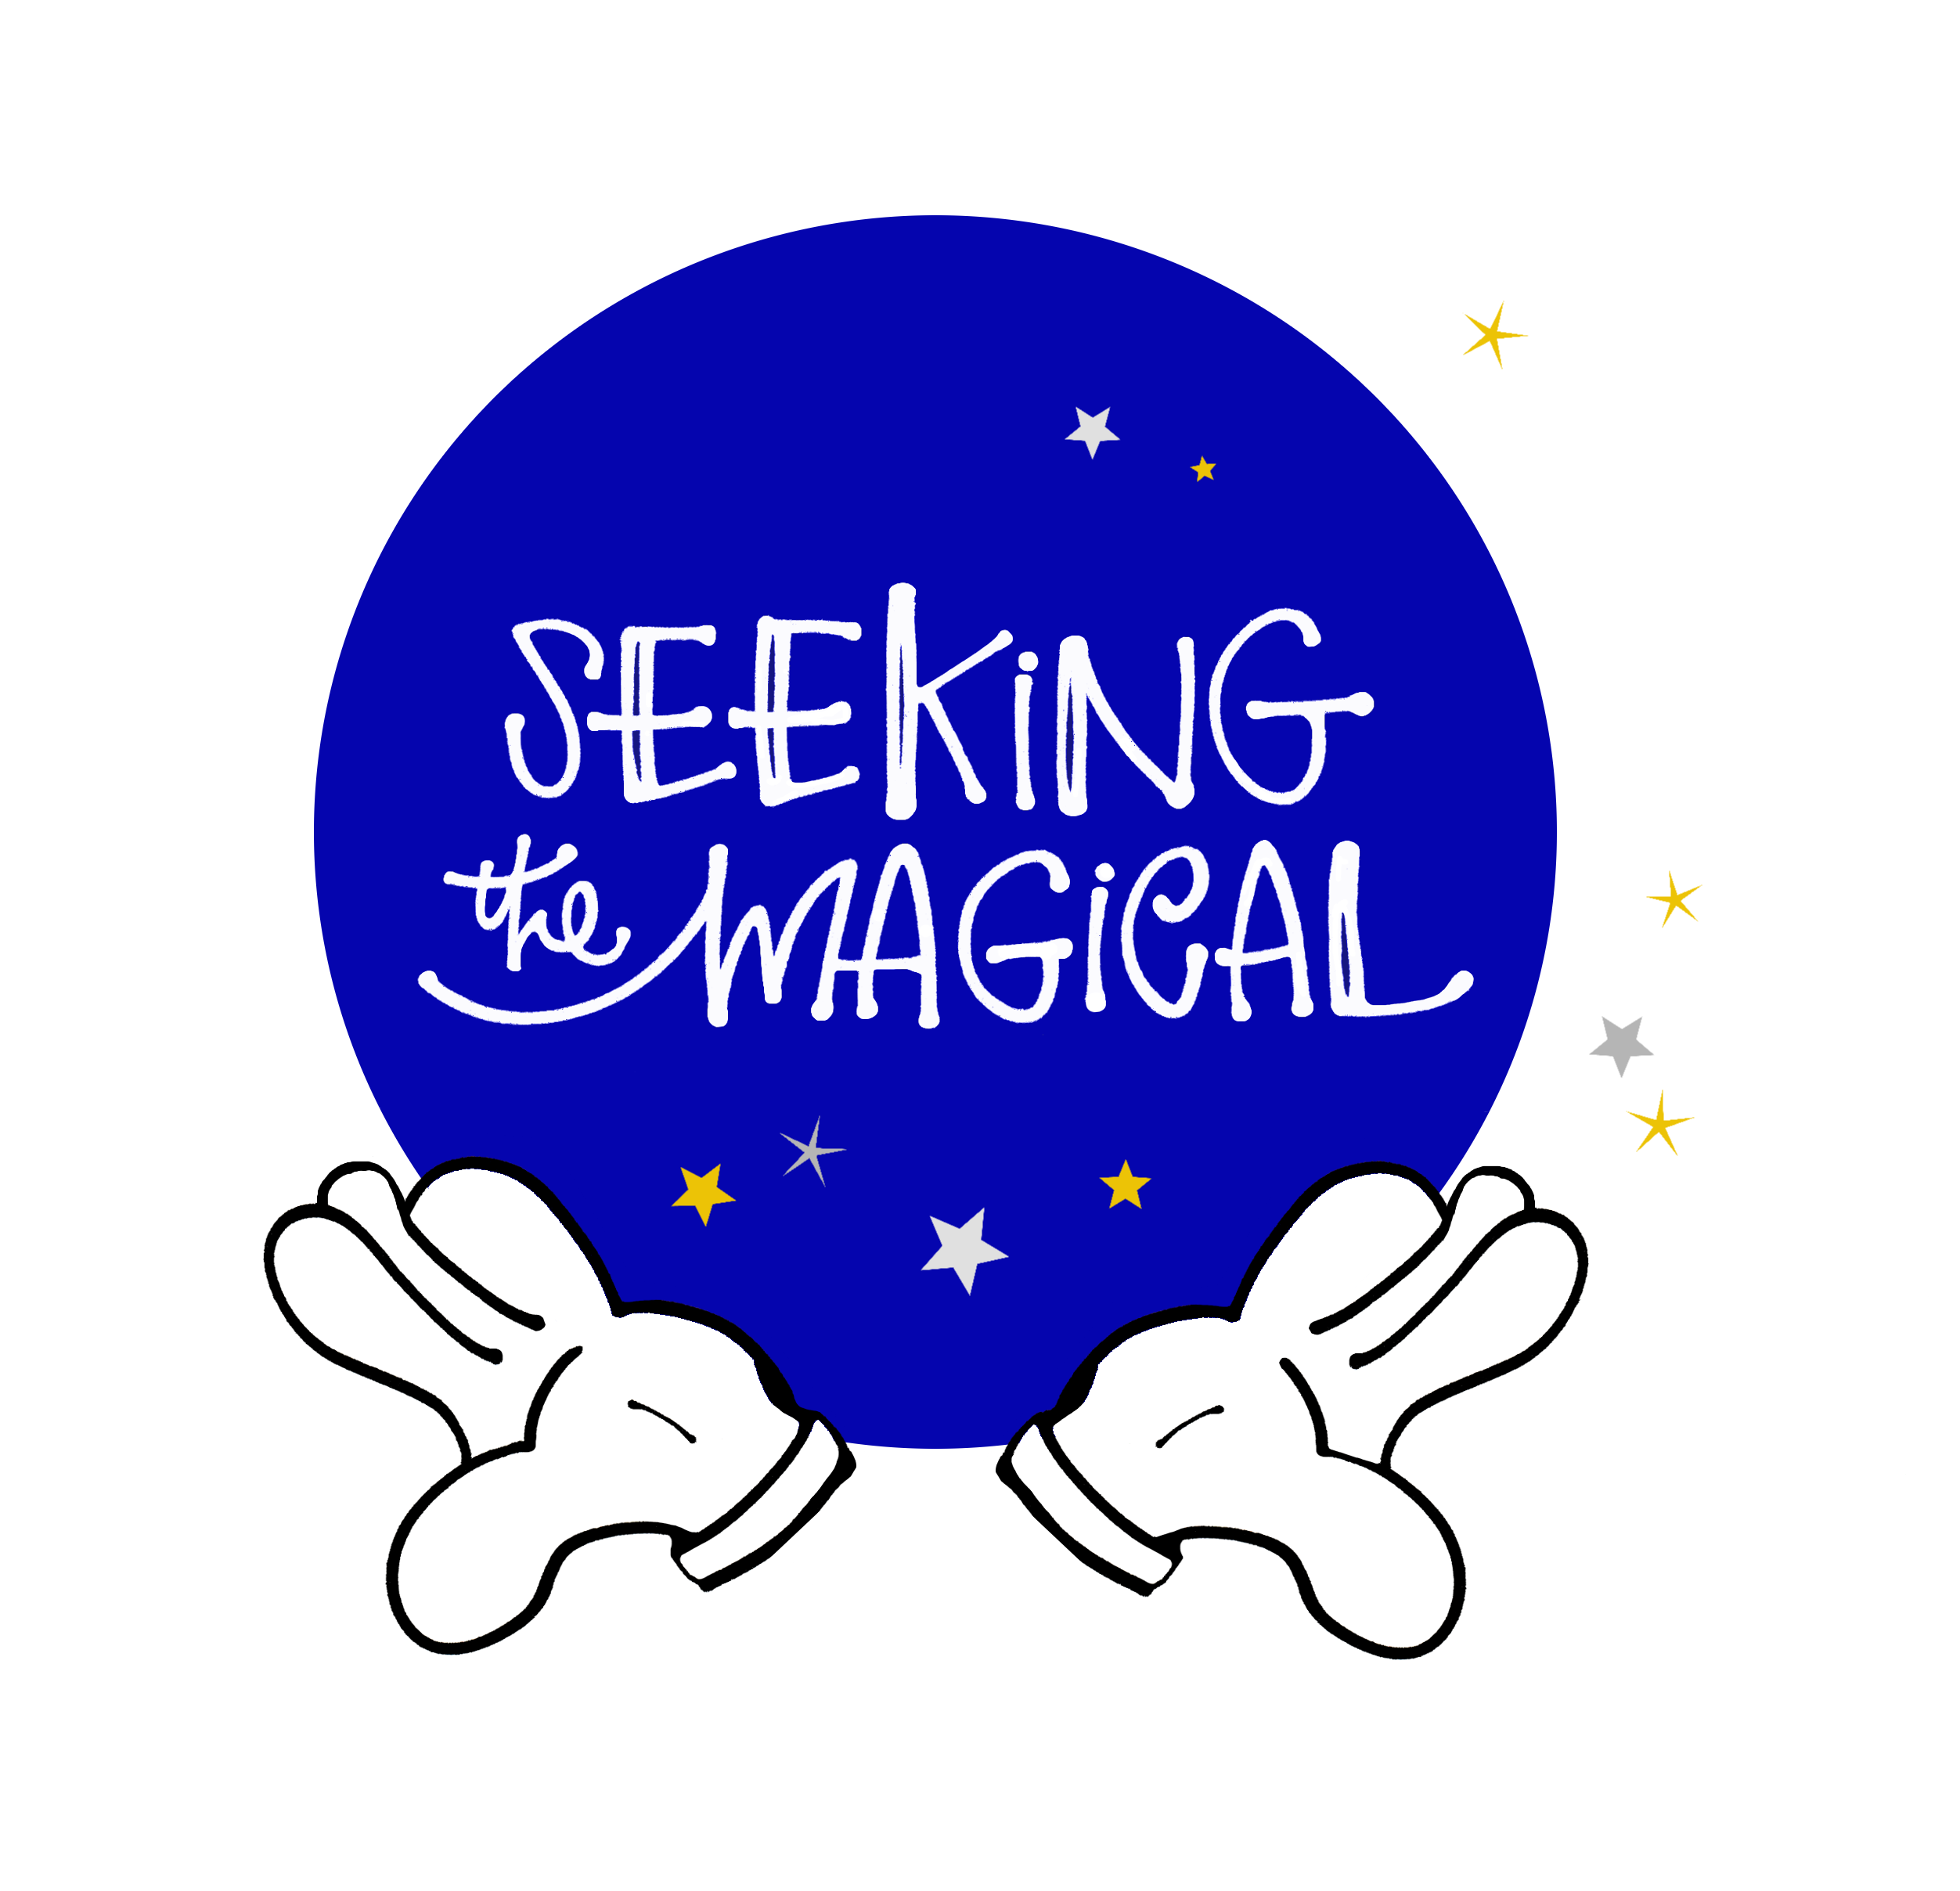 Seeking the Magical